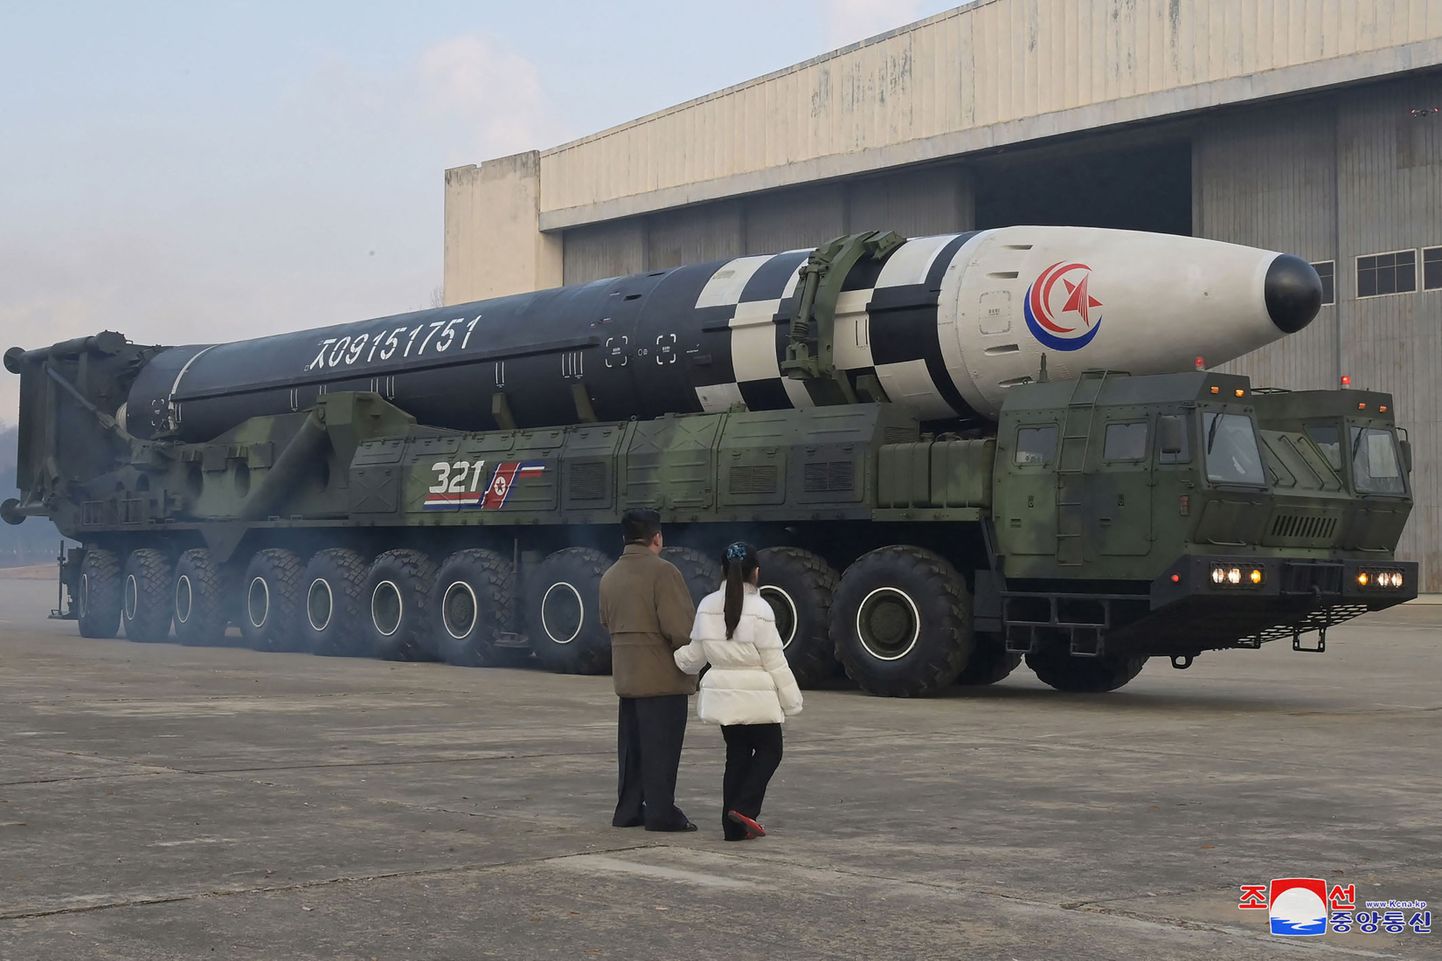 Ziemeļkorejas līderis Kims Čenuns kopā ar meitu pie raķetes.